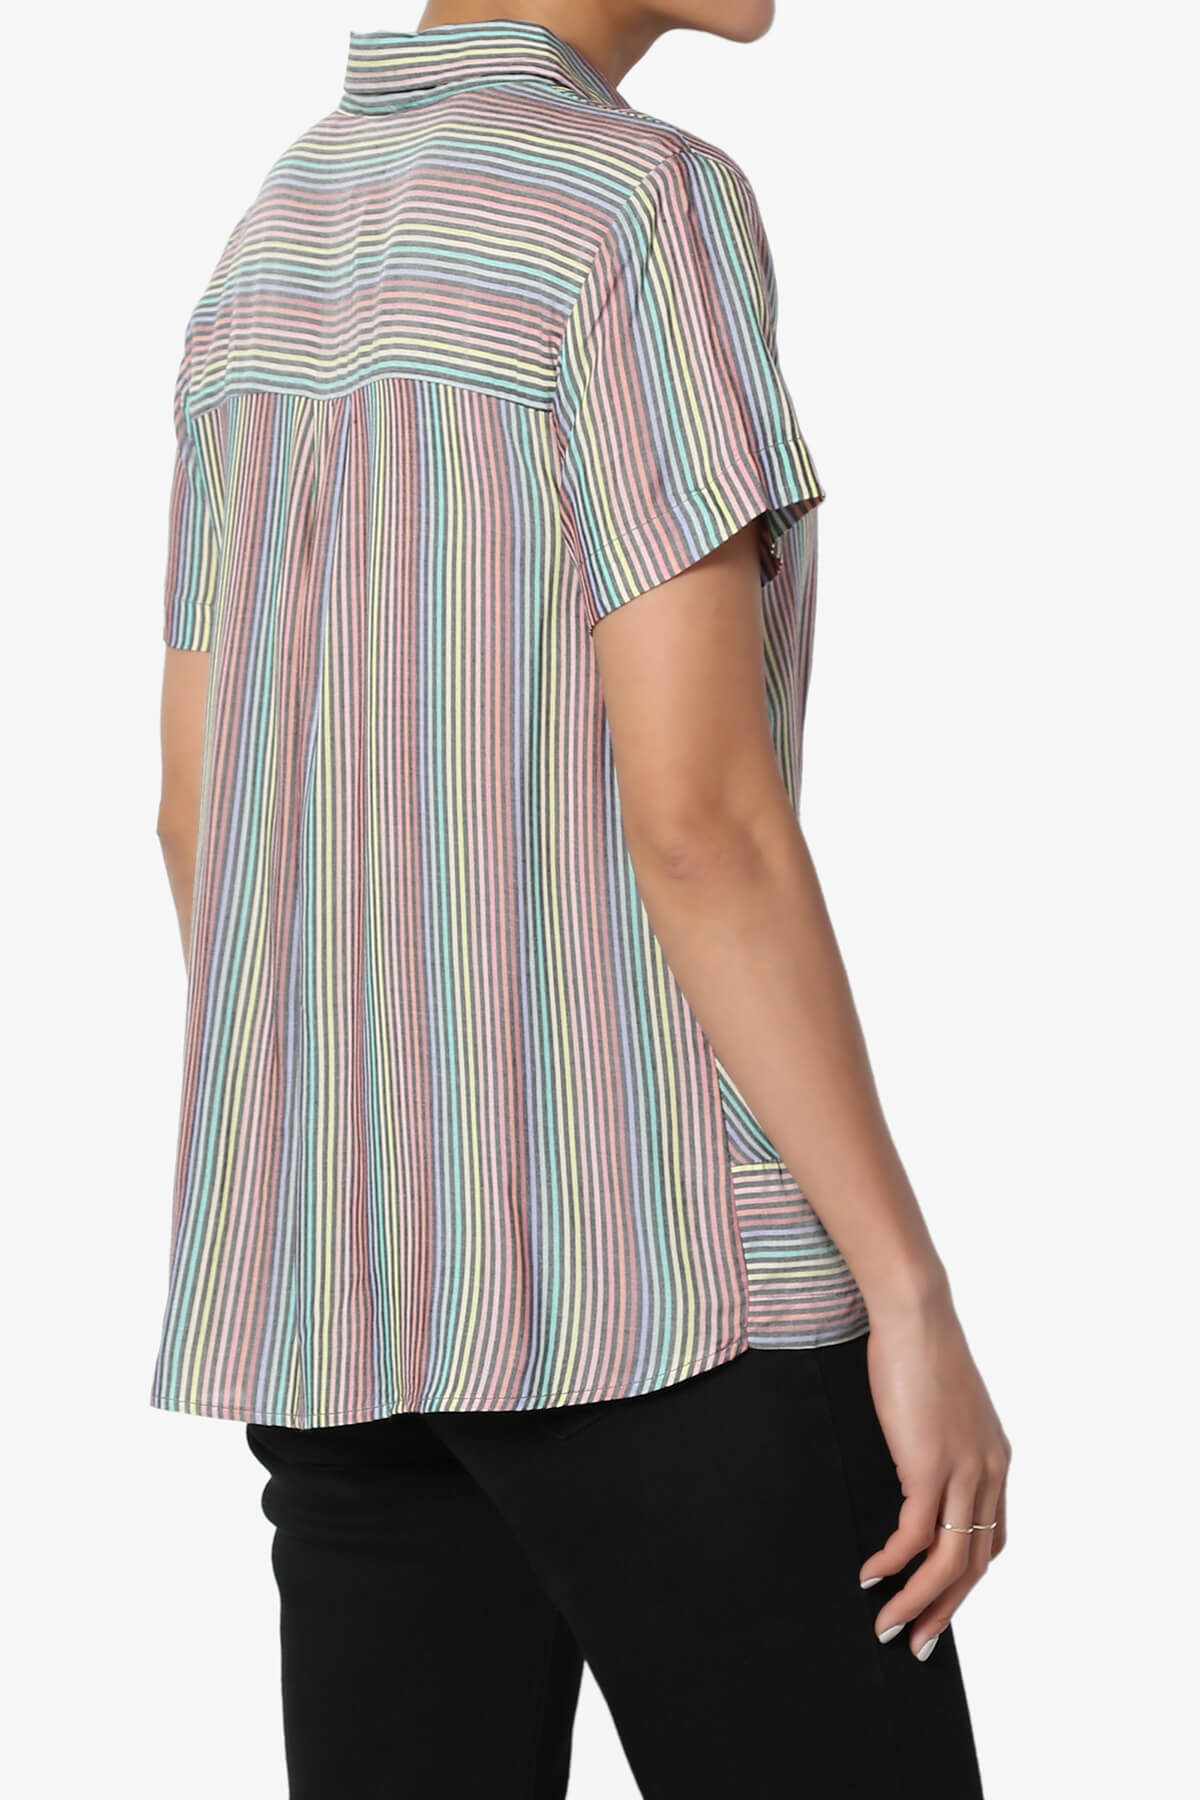 TheMogan S~3X Striped Twist Hem Button Up Shirt Short Sleeve Woven Crop Blouse